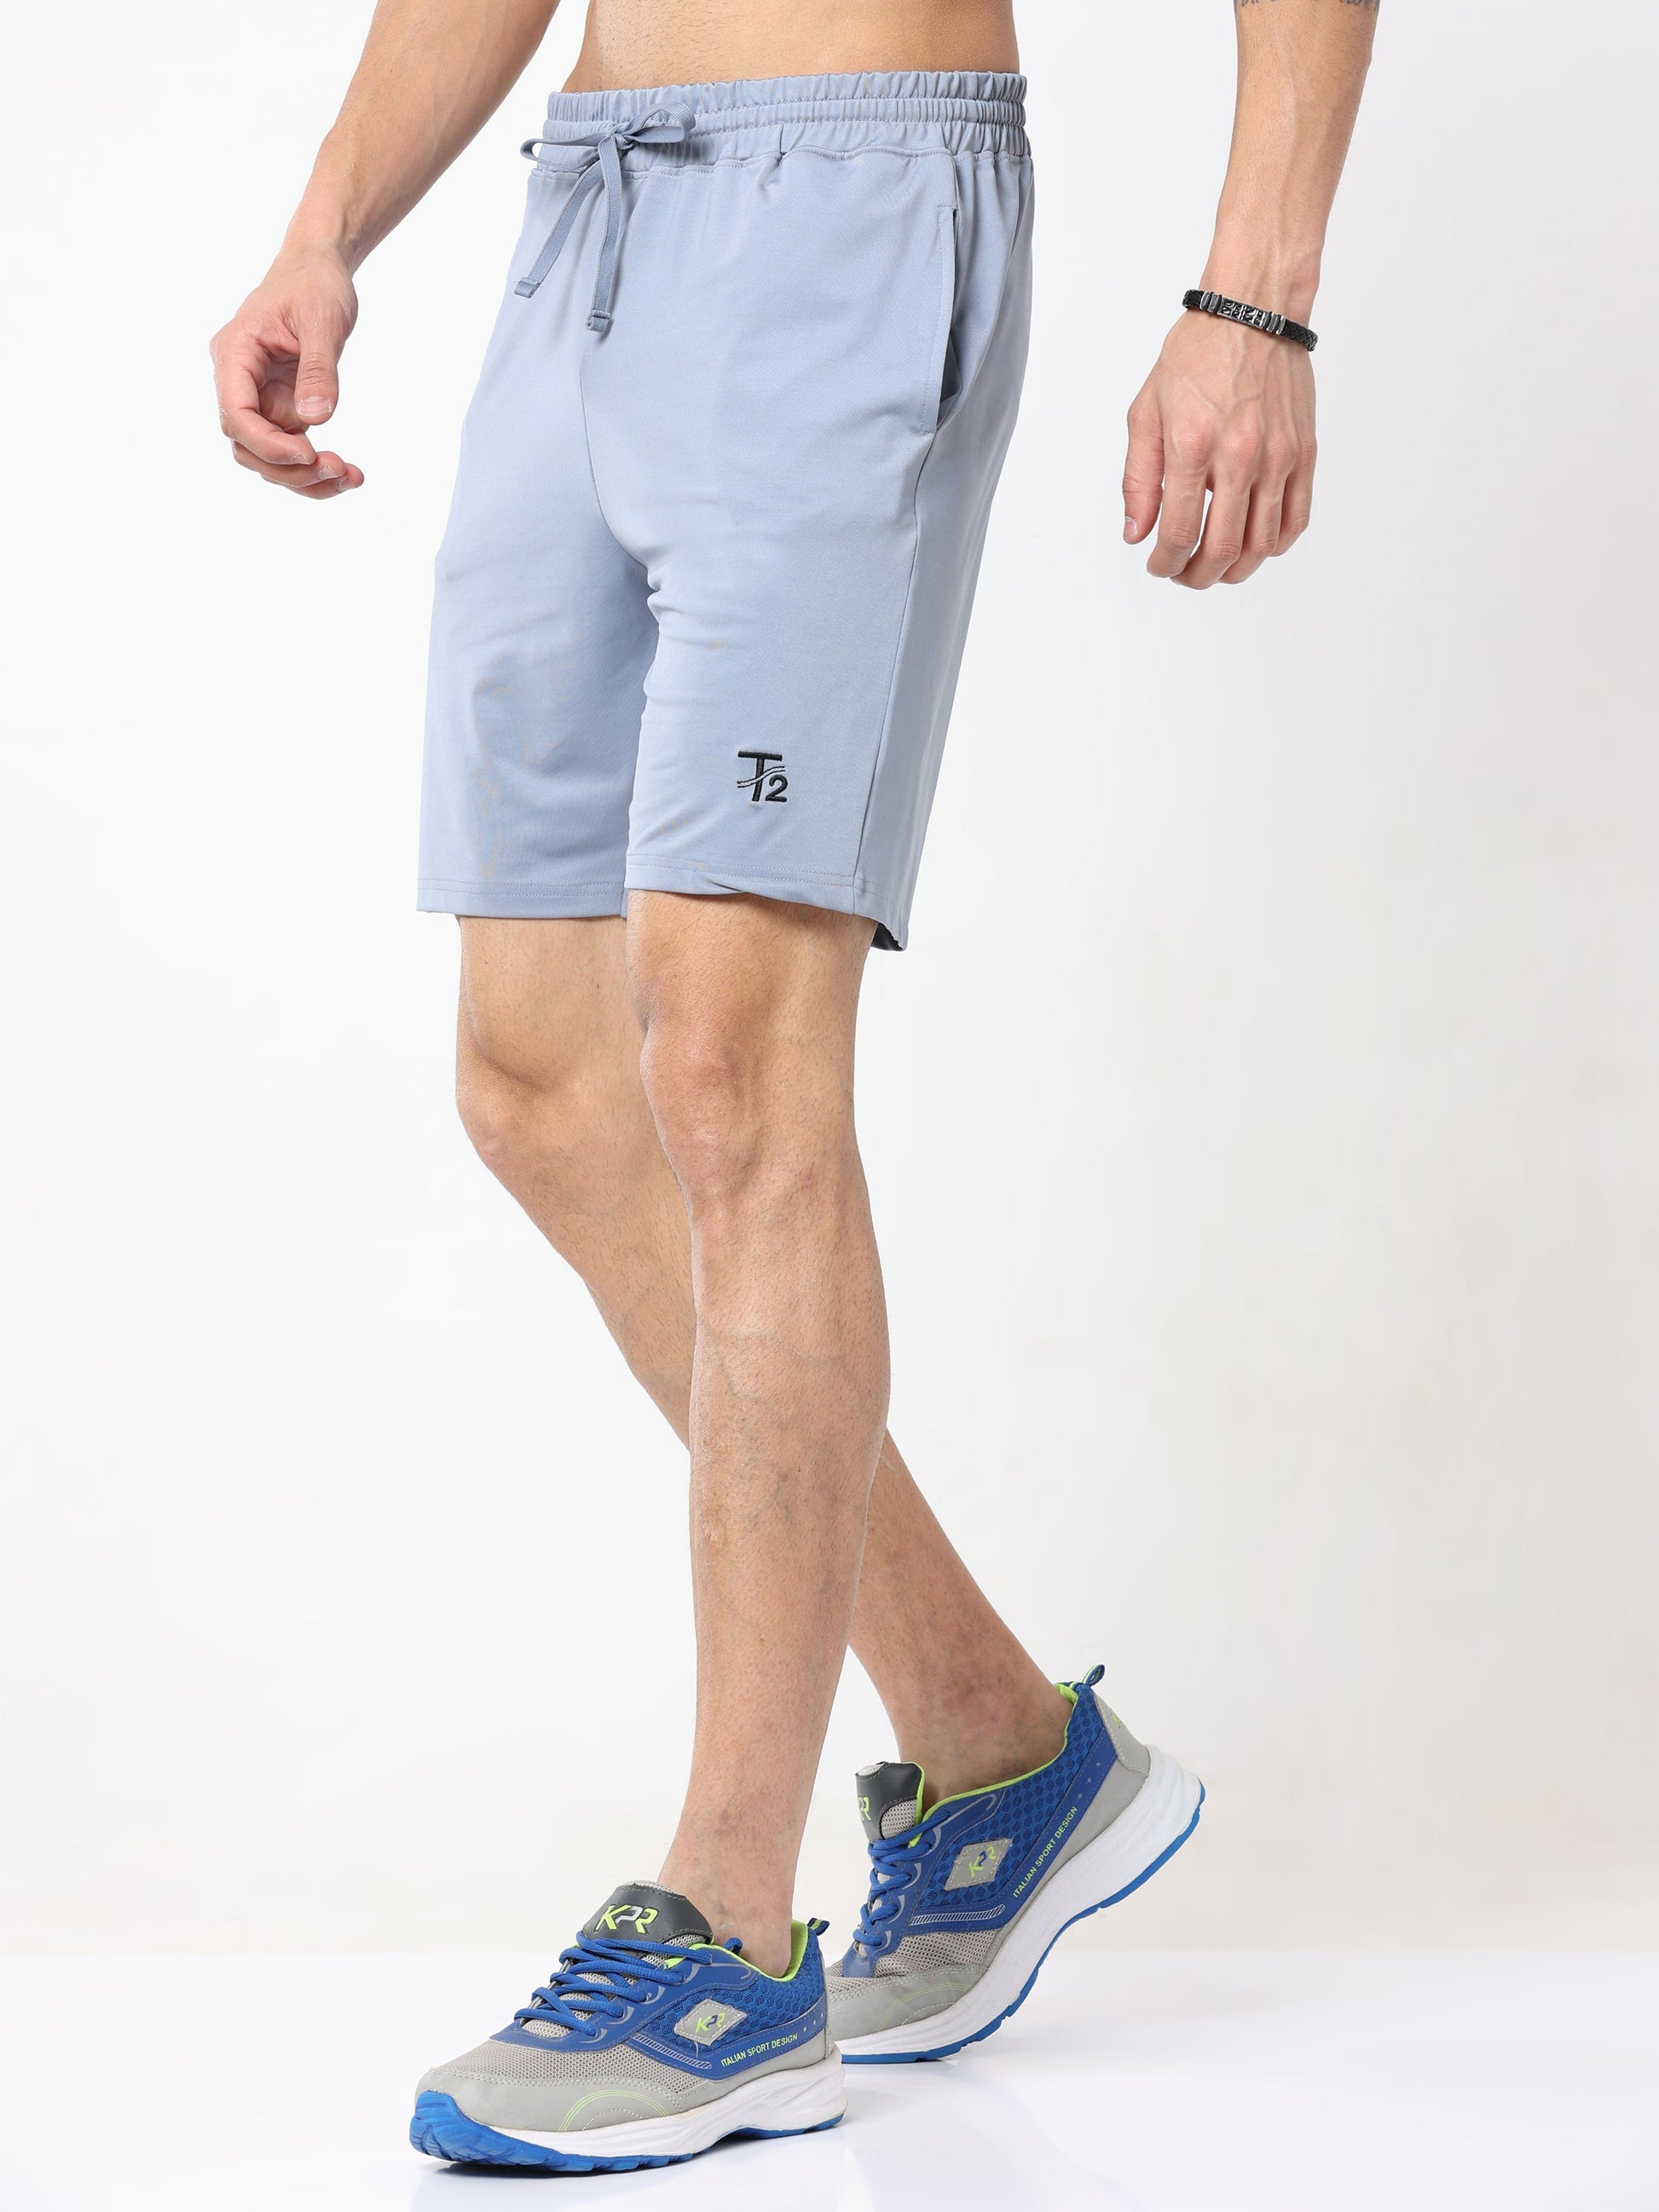 Athleisure Active Men's Shorts - Pale Blue